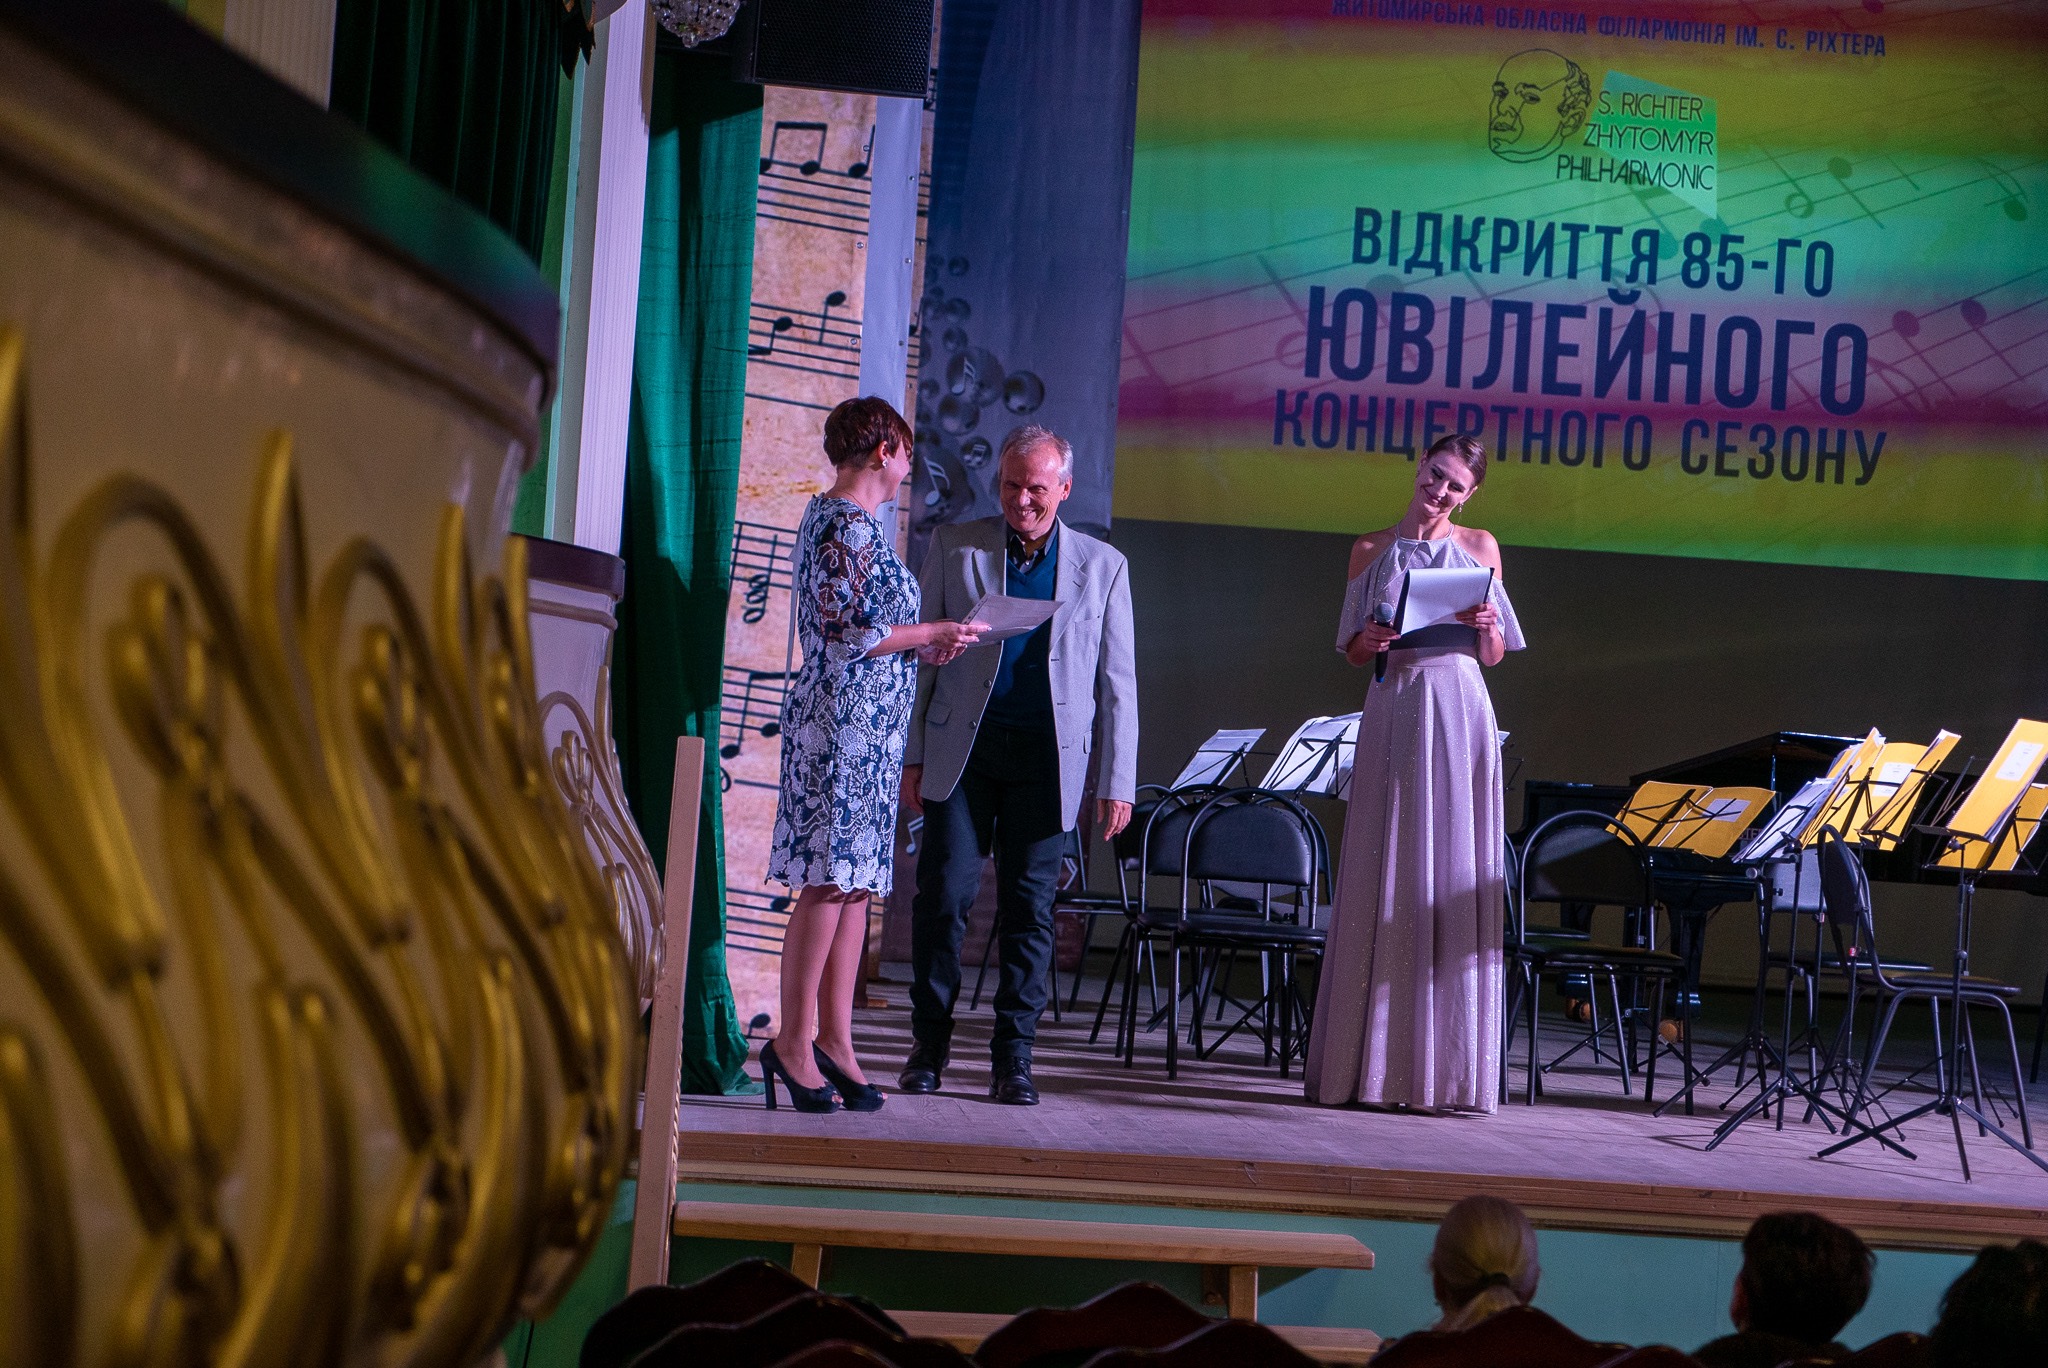 В обласній філармонії ім.С. Ріхтера відбулось відкриття 85-го концертного сезону